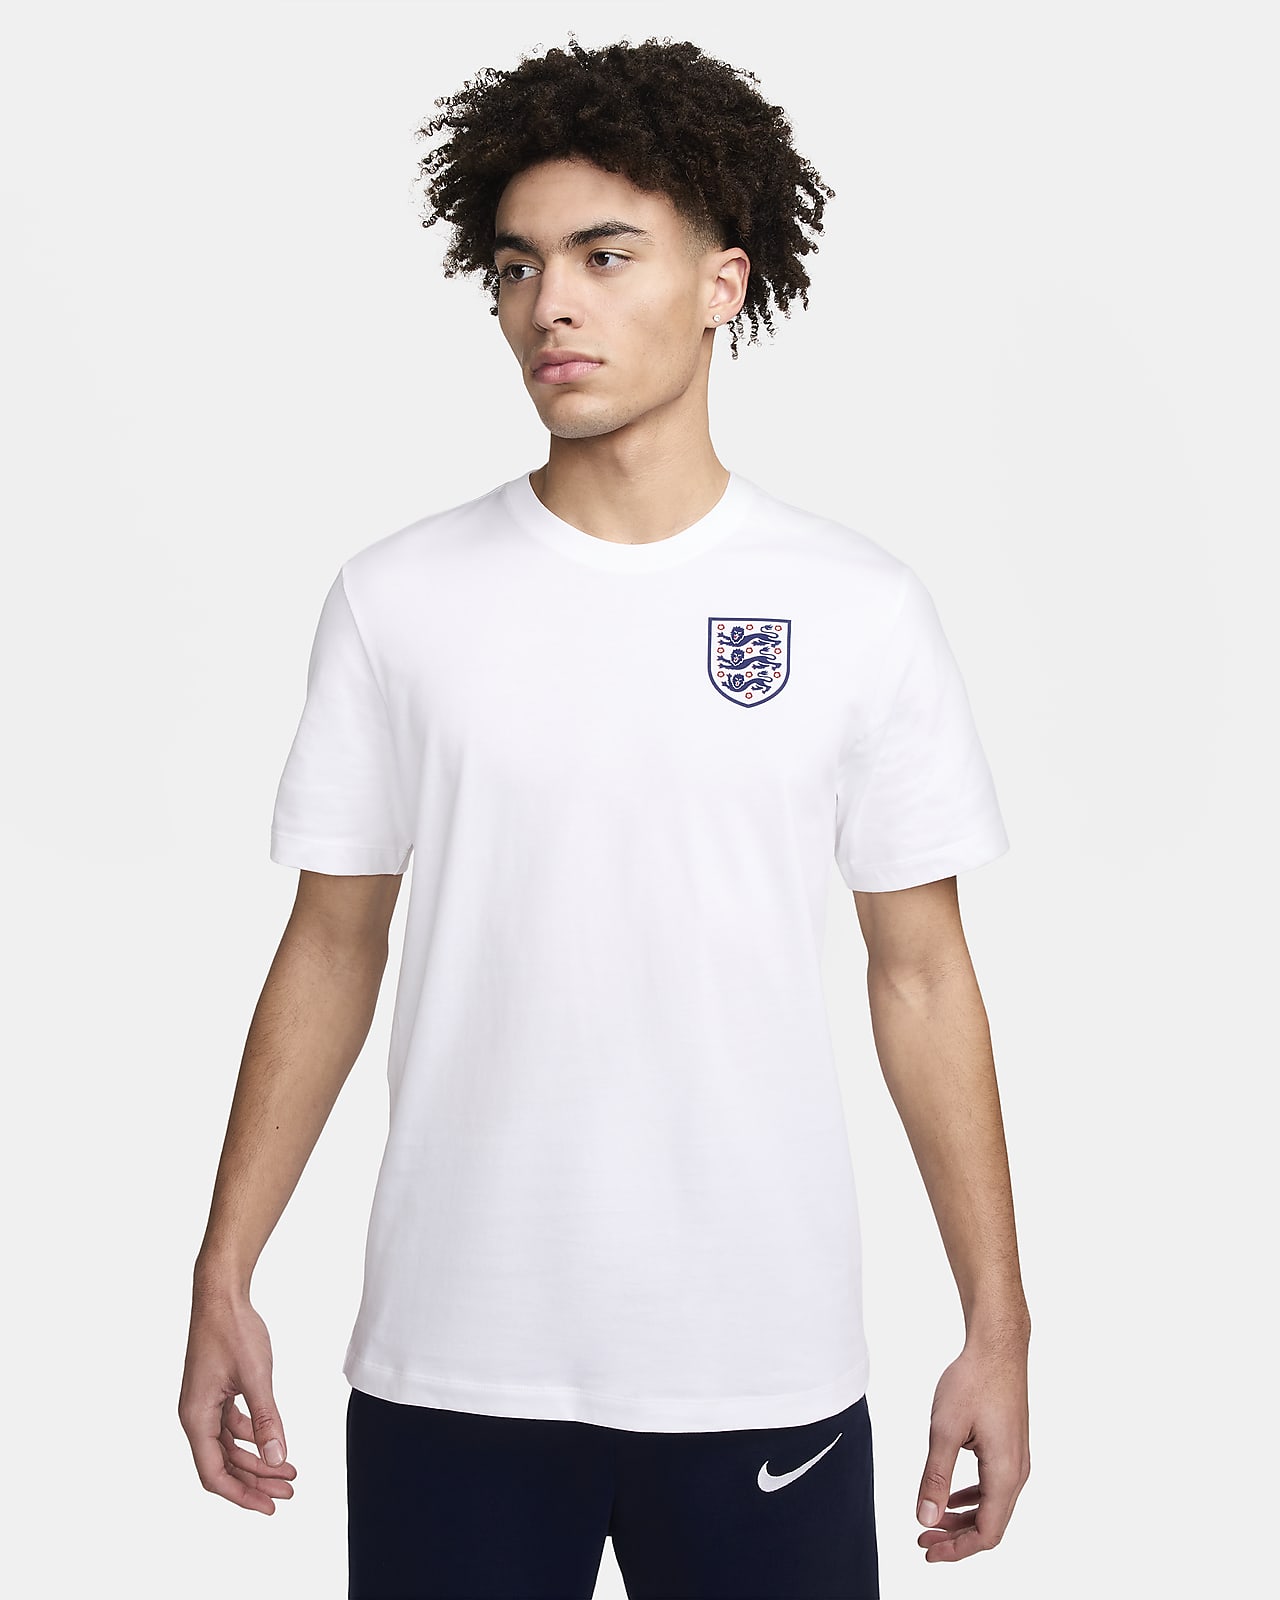 Pánské fotbalové tričko Nike Anglie